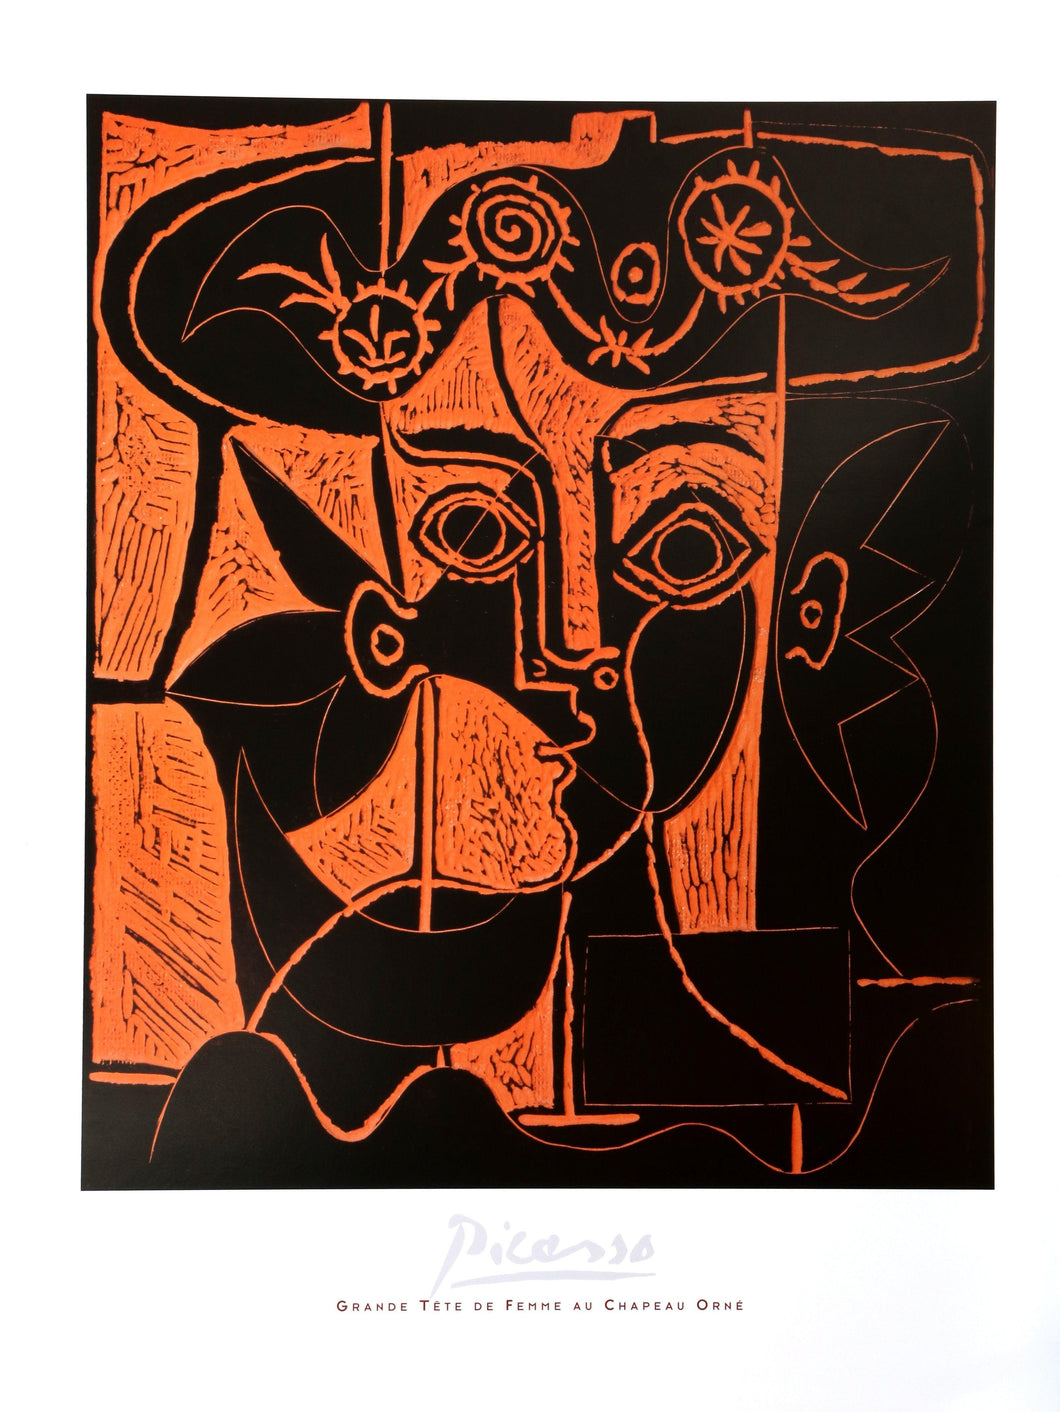 Grande Tete de Femme au Chapeau Orne Poster | Pablo Picasso,{{product.type}}